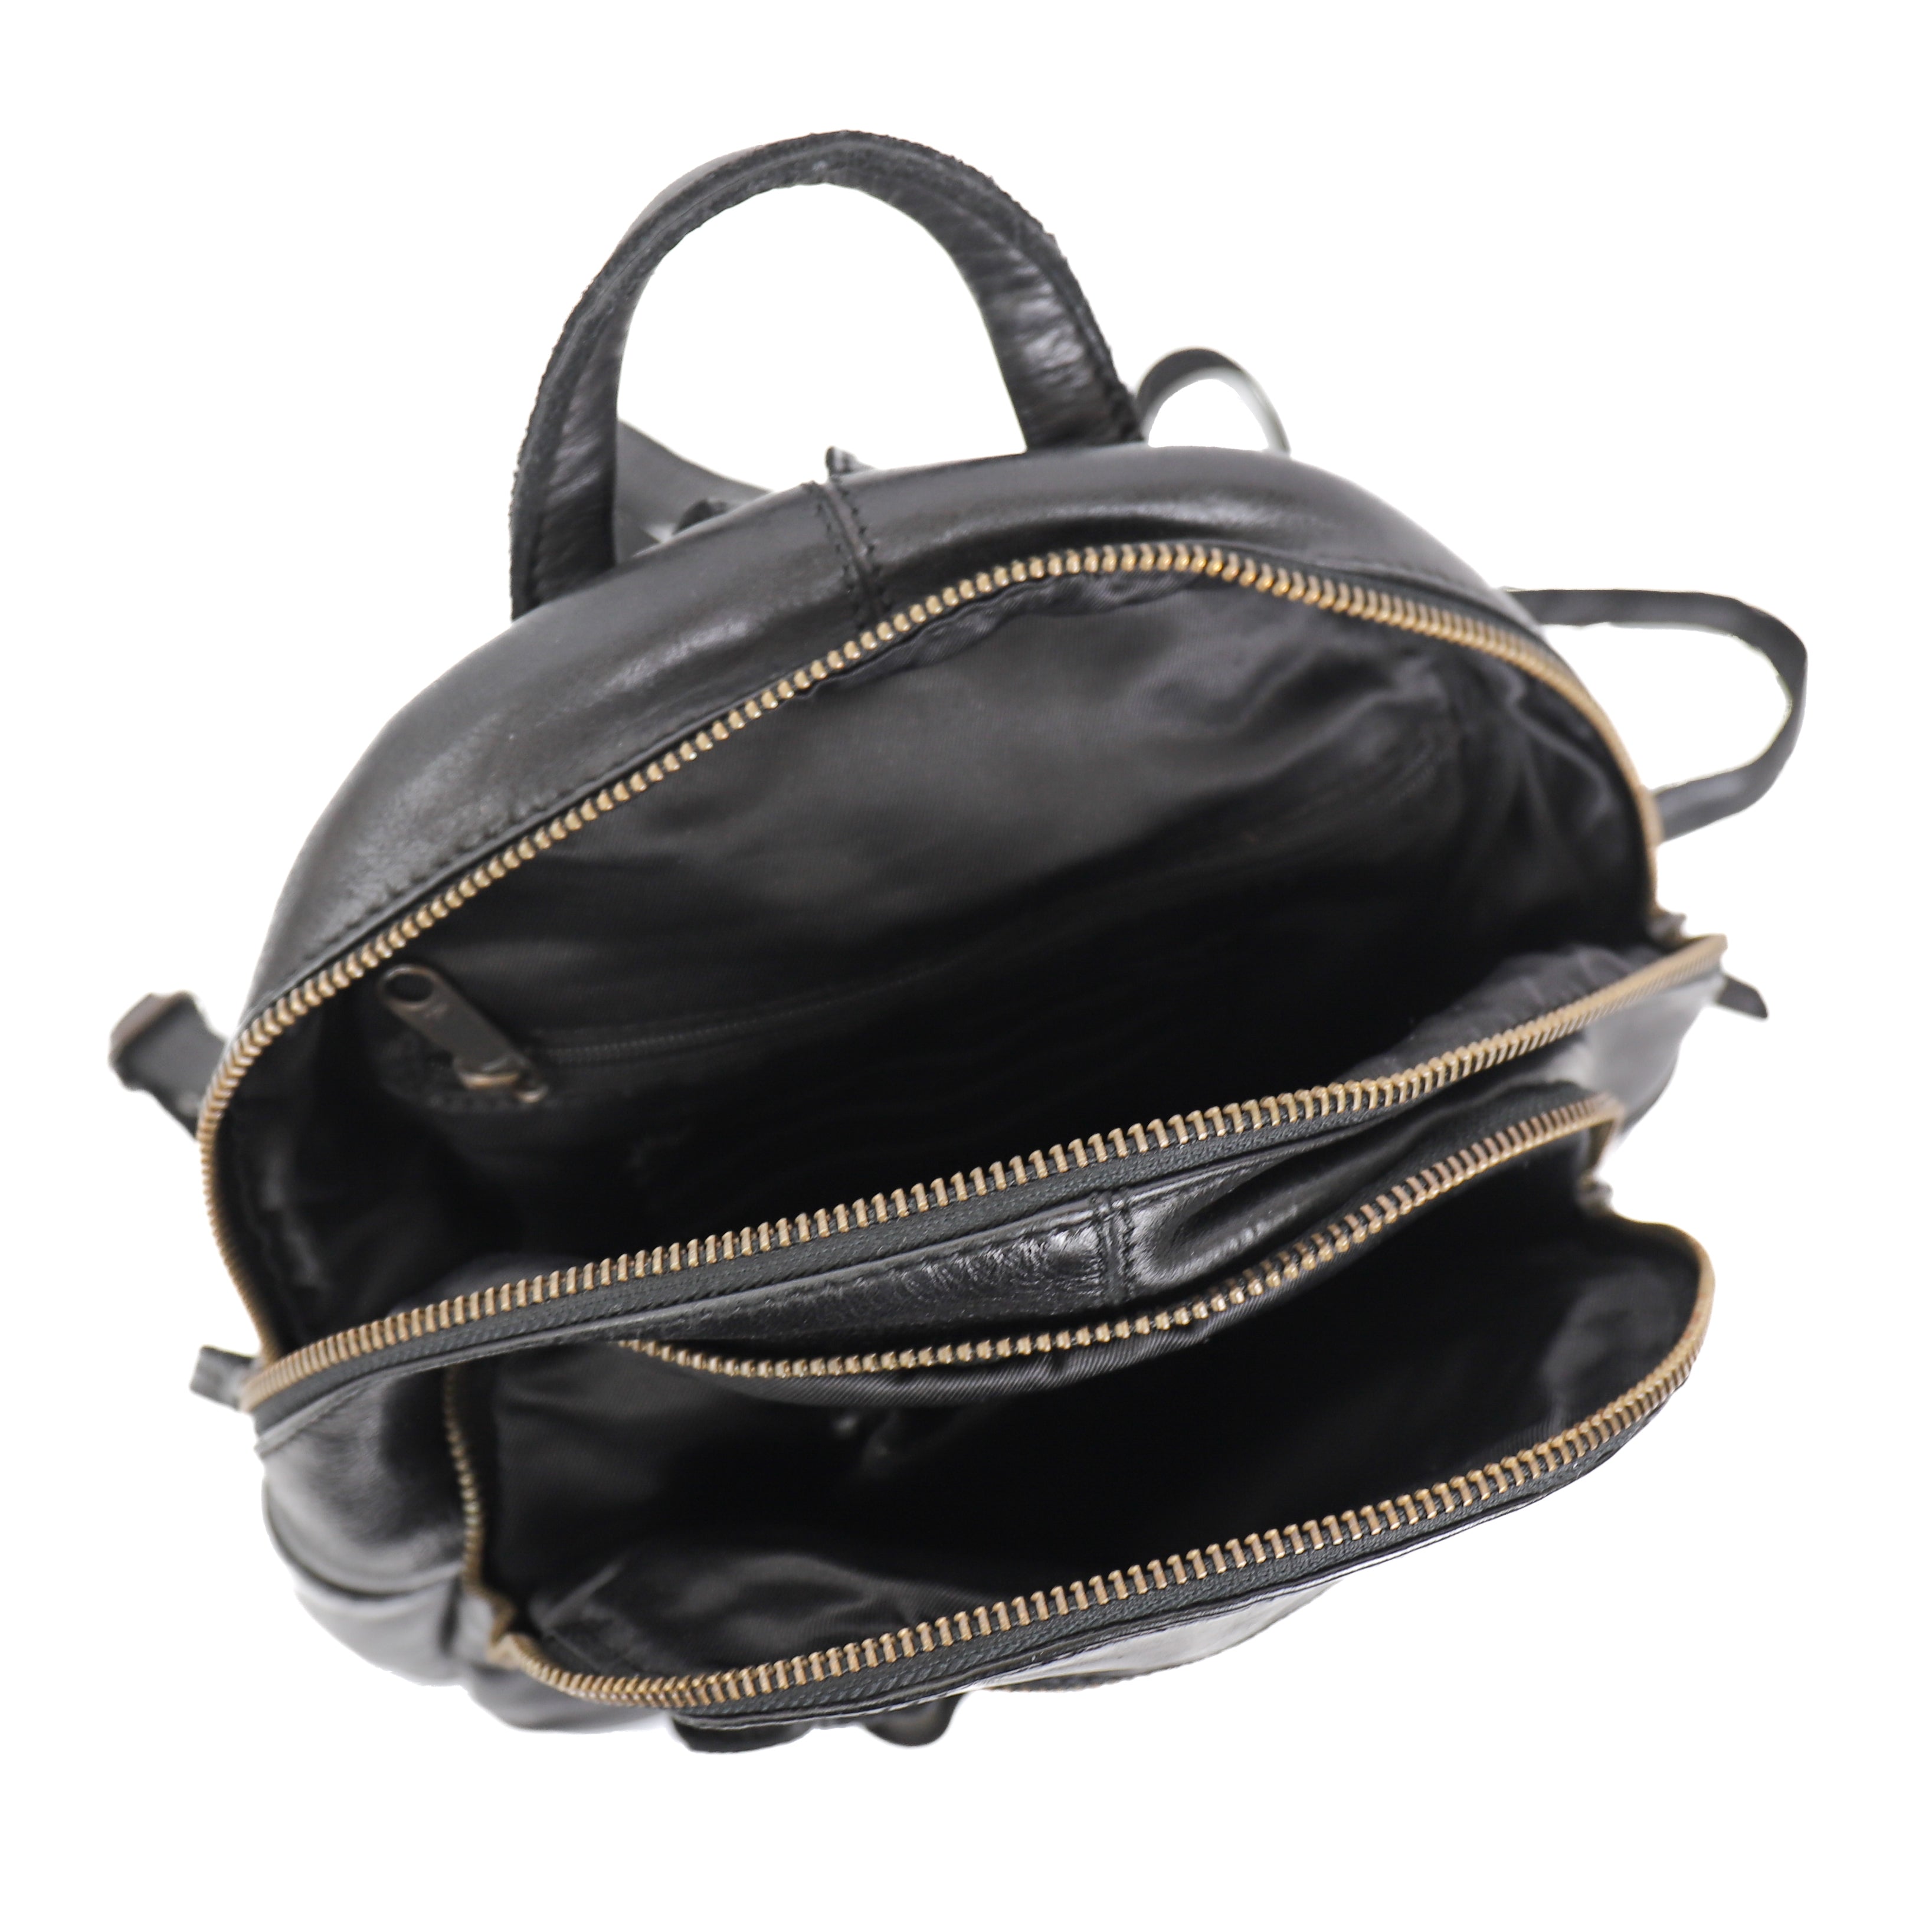 Backpack 'Kim' black